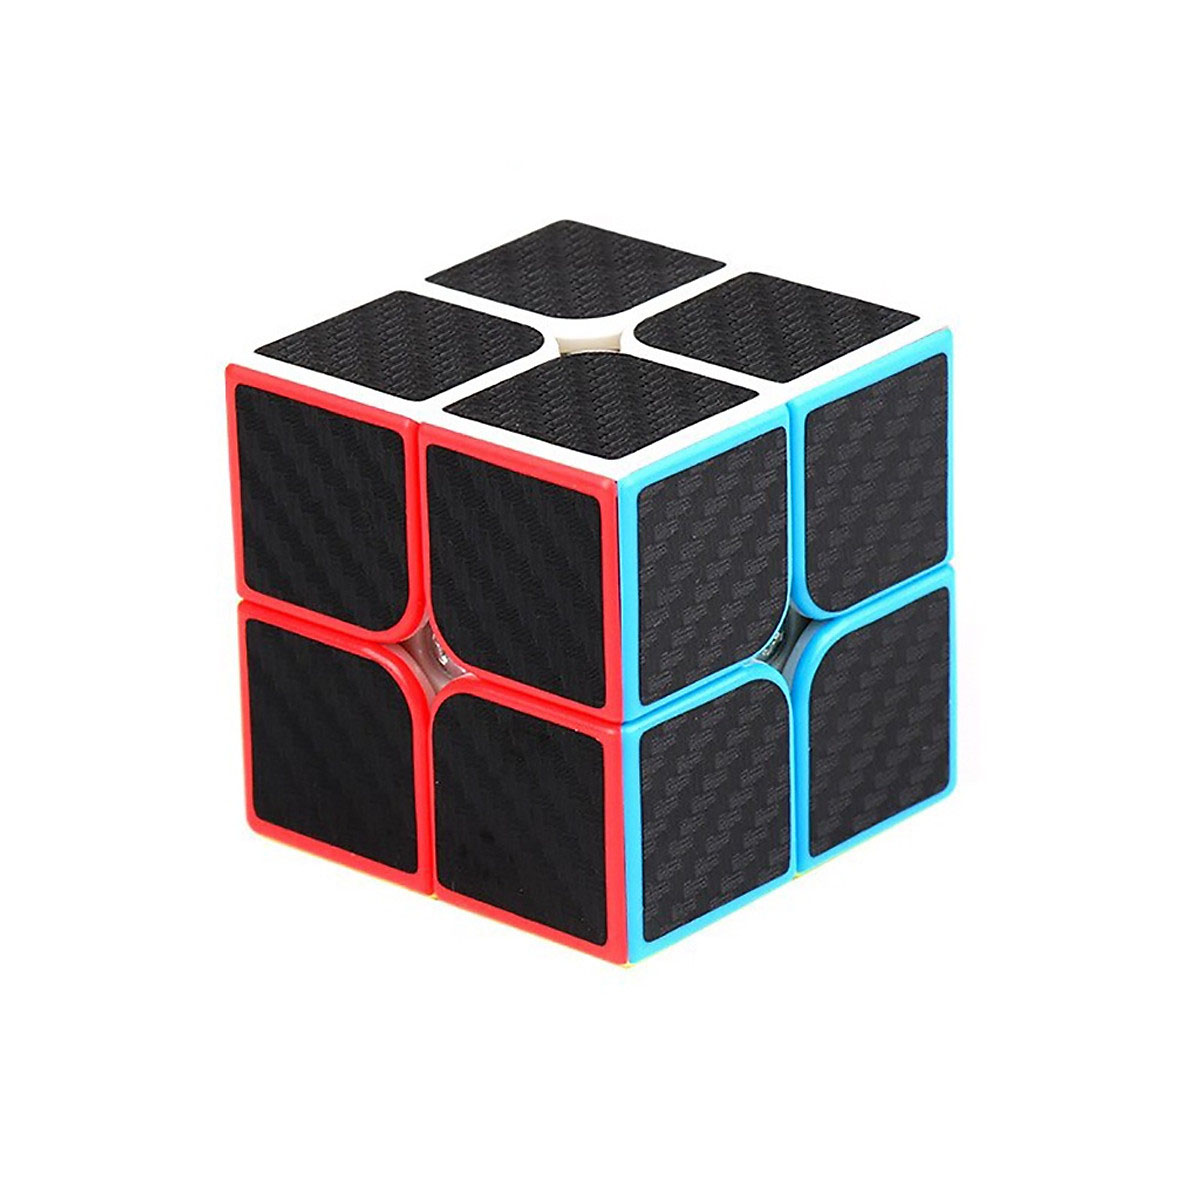 Rubik Carbon cao cấp - Tặng kèm chân đế